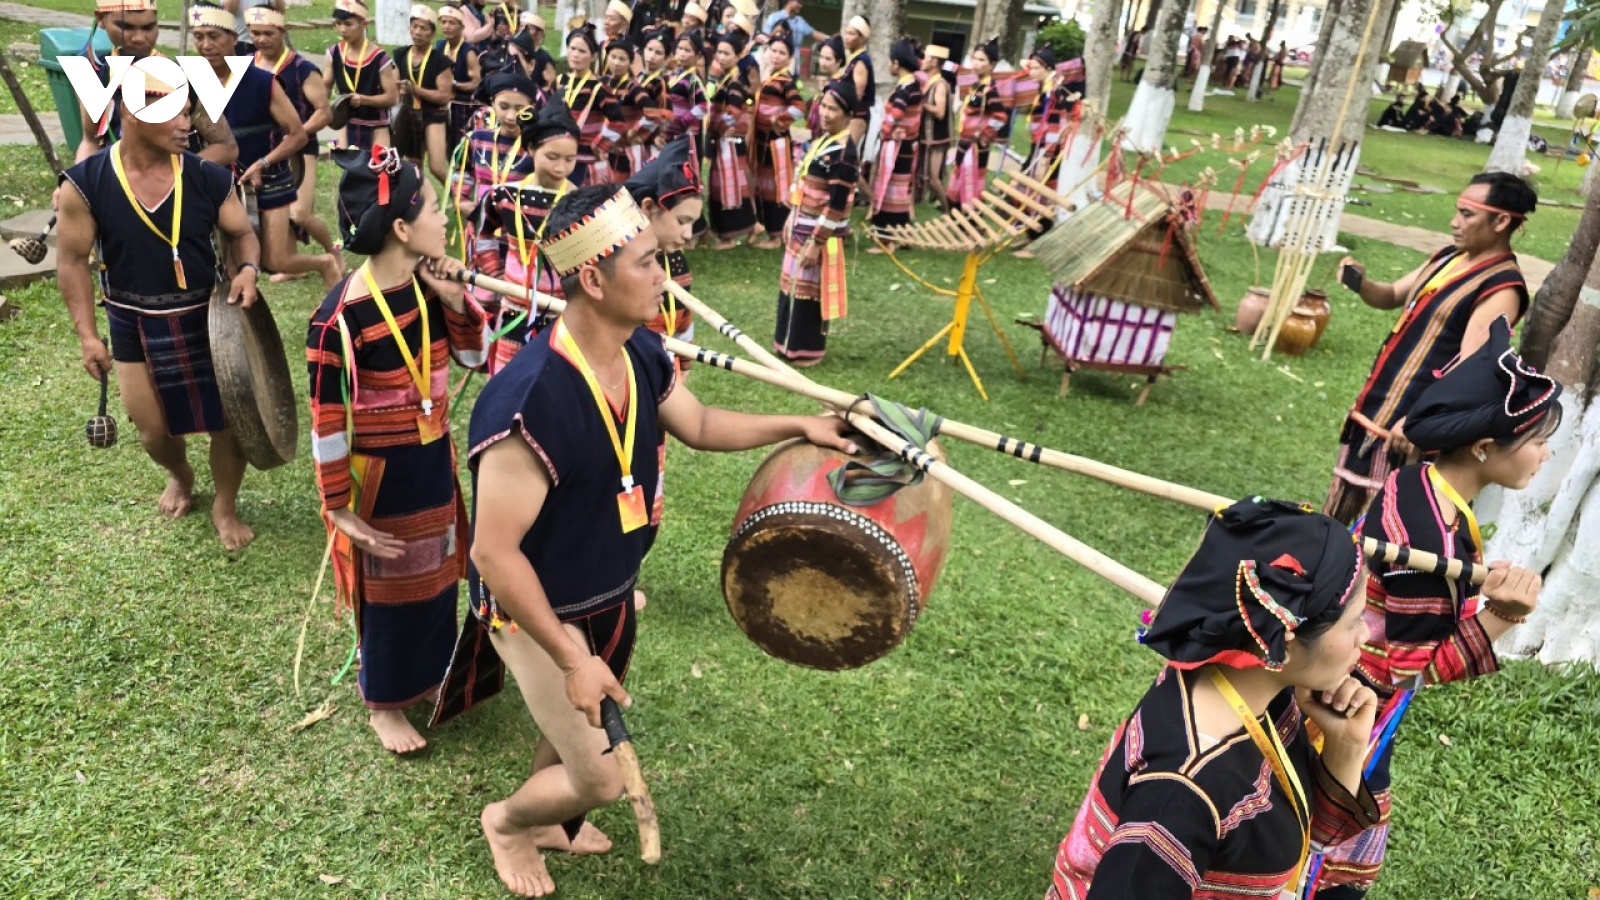 Đậm đà bản sắc Ngày hội văn hóa các dân tộc tỉnh Gia Lai